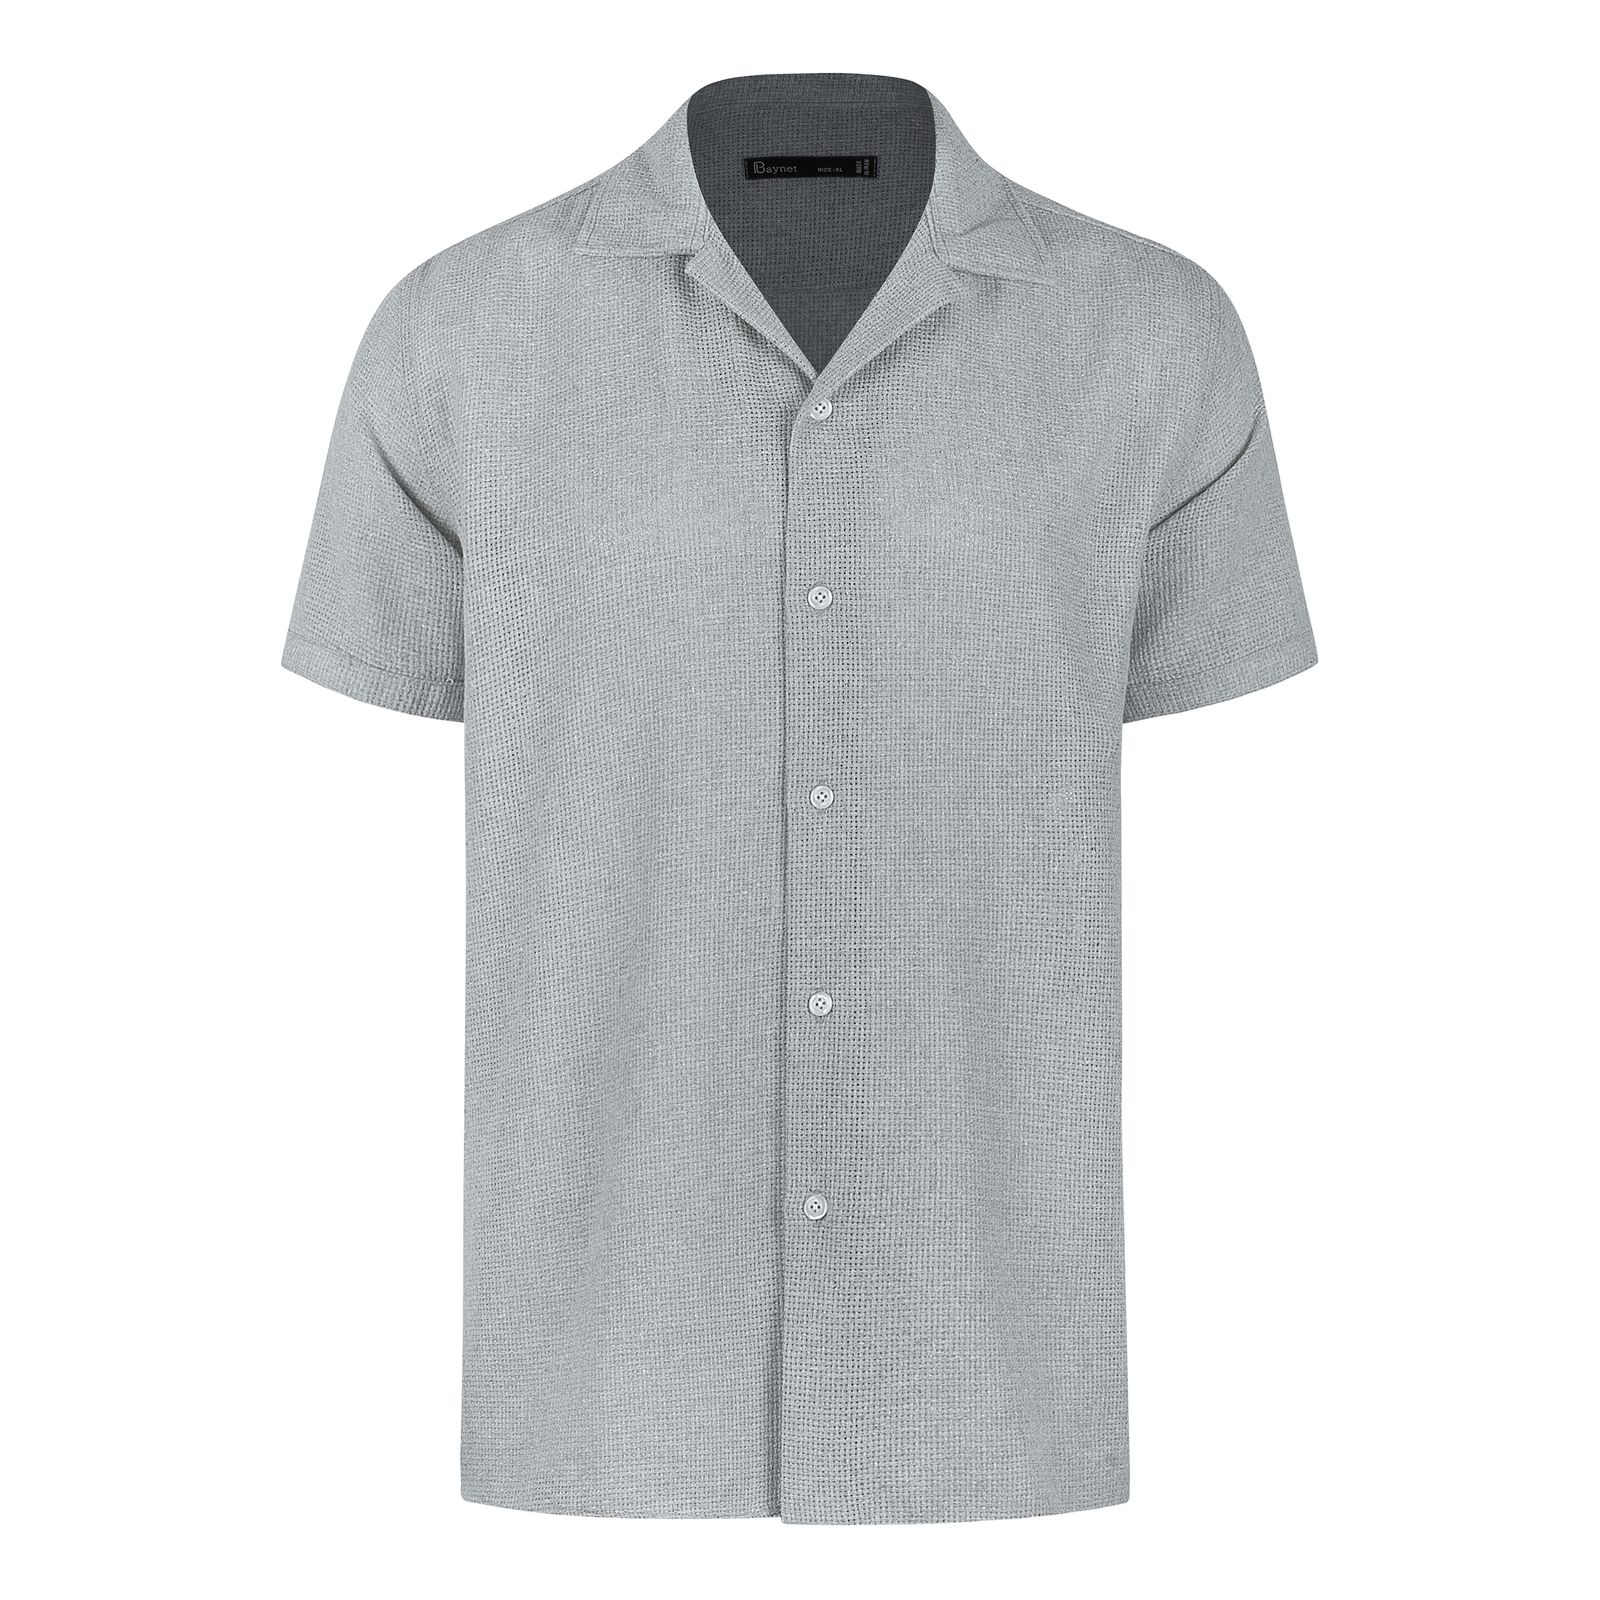 پیراهن آستین کوتاه مردانه باینت مدل 772-2 رنگ طوسی روشن -  - 1